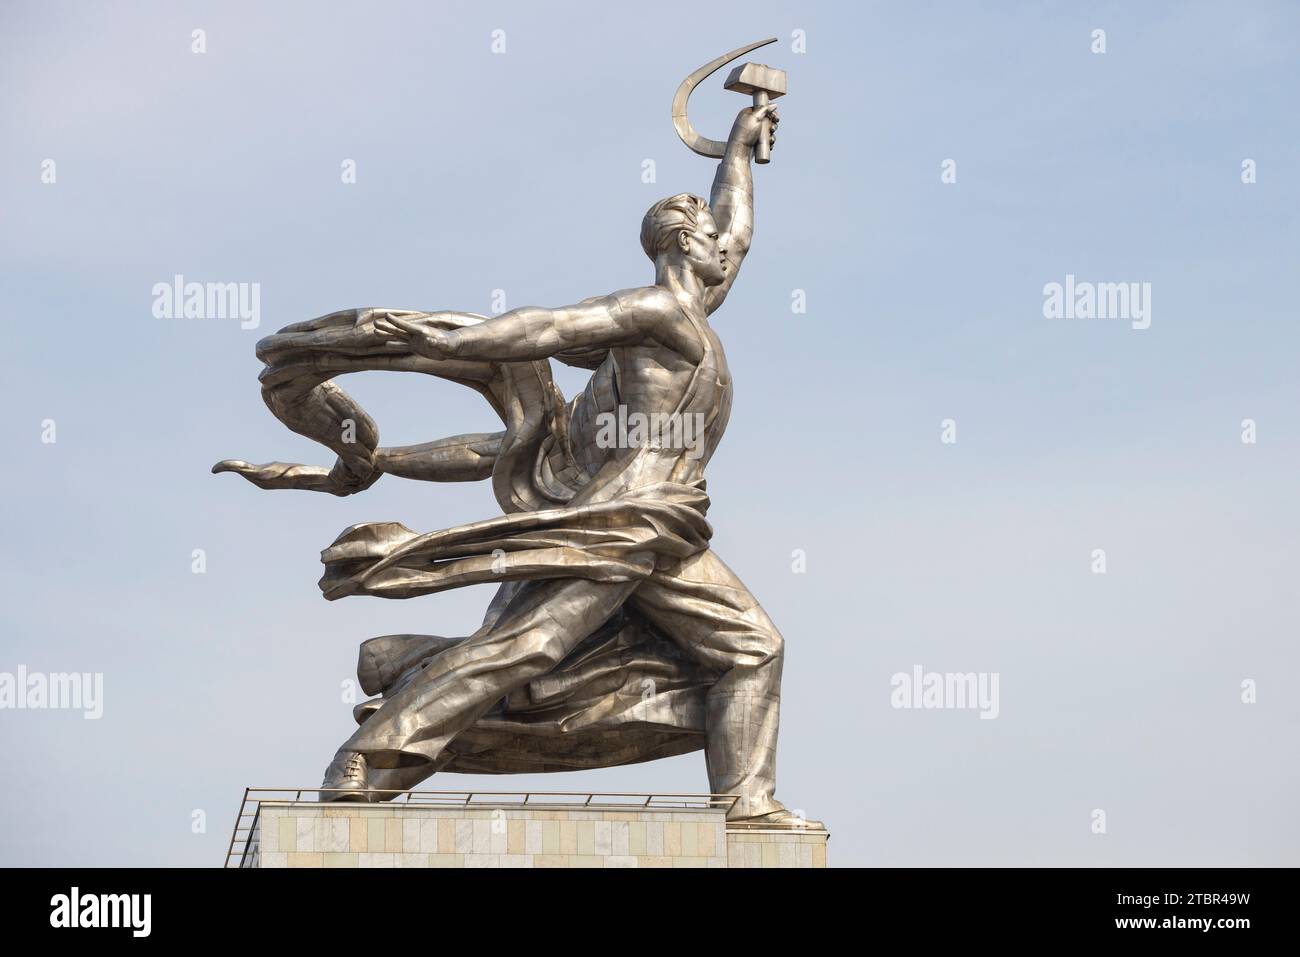 MOSKAU, RUSSLAND - 14. APRIL 2021: Skulptur eines Arbeiters an einem Apriltag. Fragment des berühmten sowjetischen Denkmals „Arbeiter und kollektive Bauernhoffrau“ Stockfoto